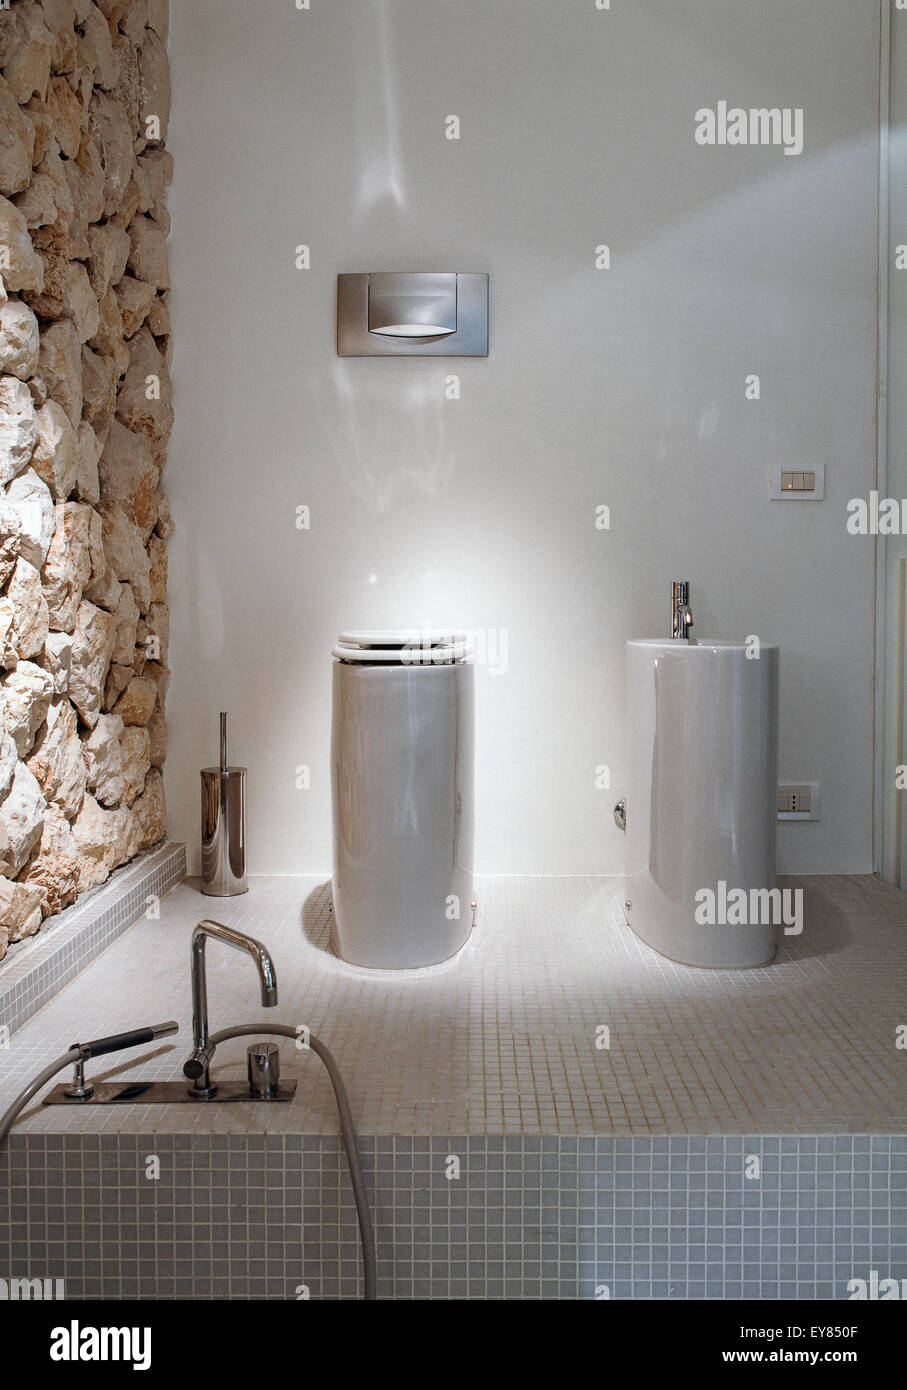 Dettaglio dei sanitari del bagno moderno il cui pavimento è rivestito con mosaico in primo piano il rubinetto della vasca da bagno Foto Stock